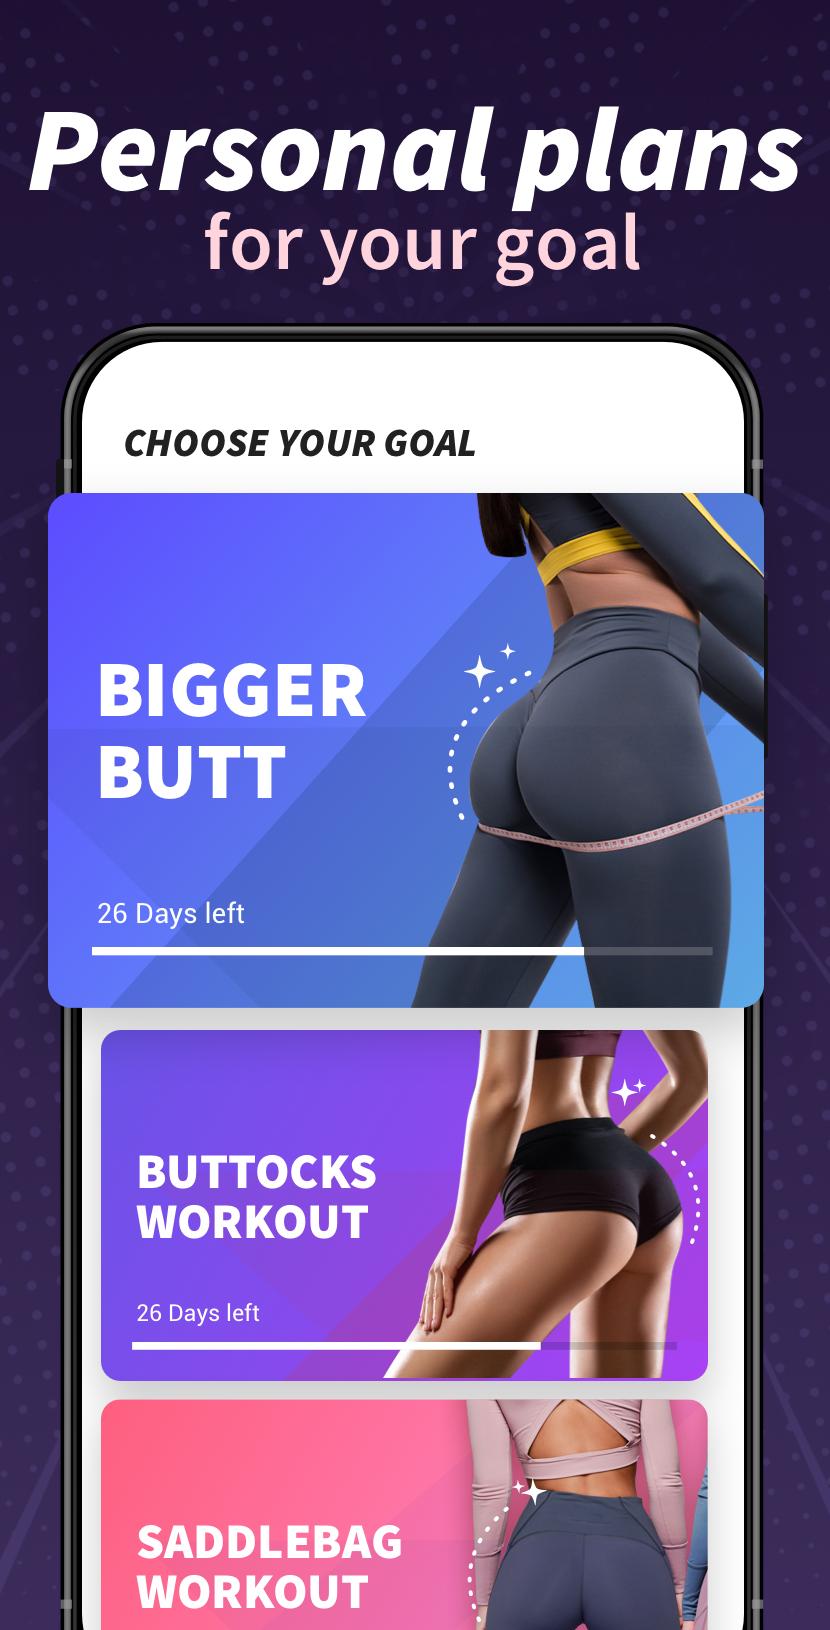 Buttocks Workout - Hips, Legs & Butt Workout 1.0.43 Screenshot 4